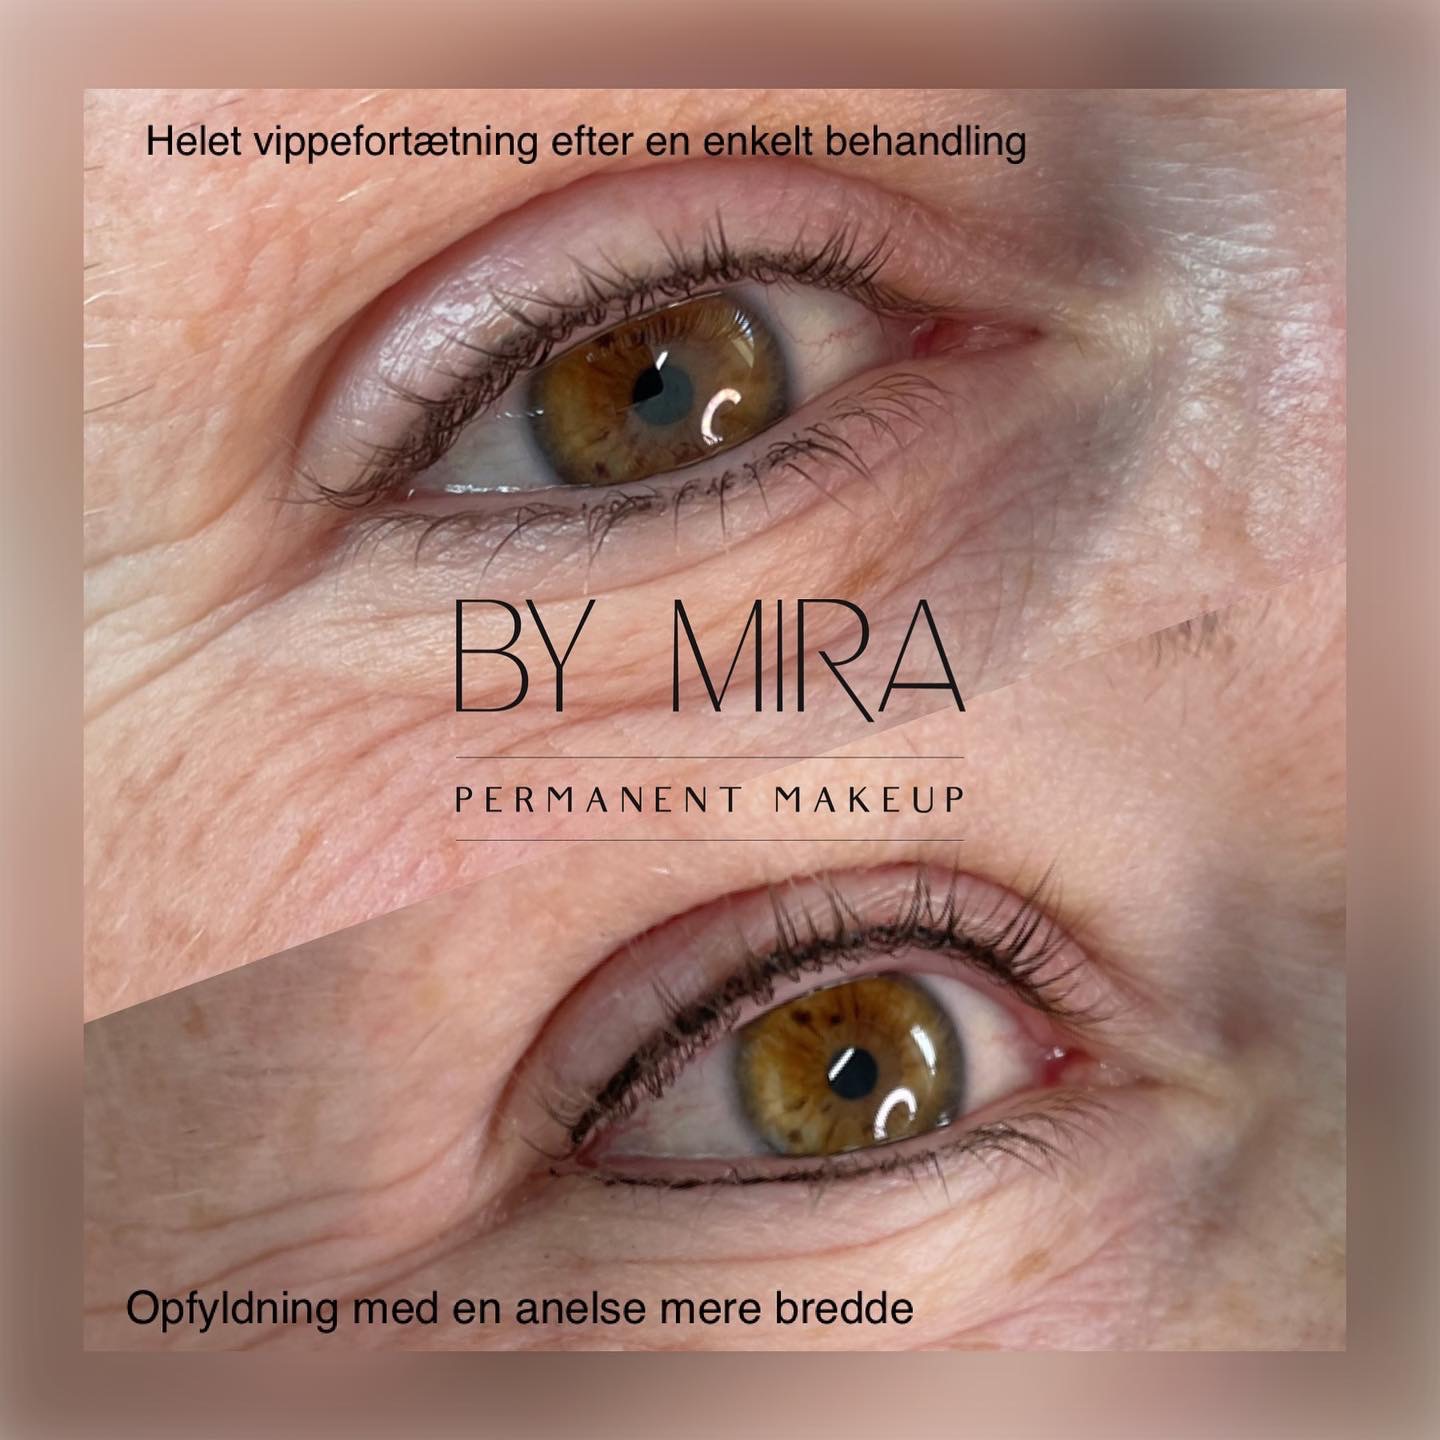 Permanent makeup | Microblading → Bryn, eyeliner og læber By Mira